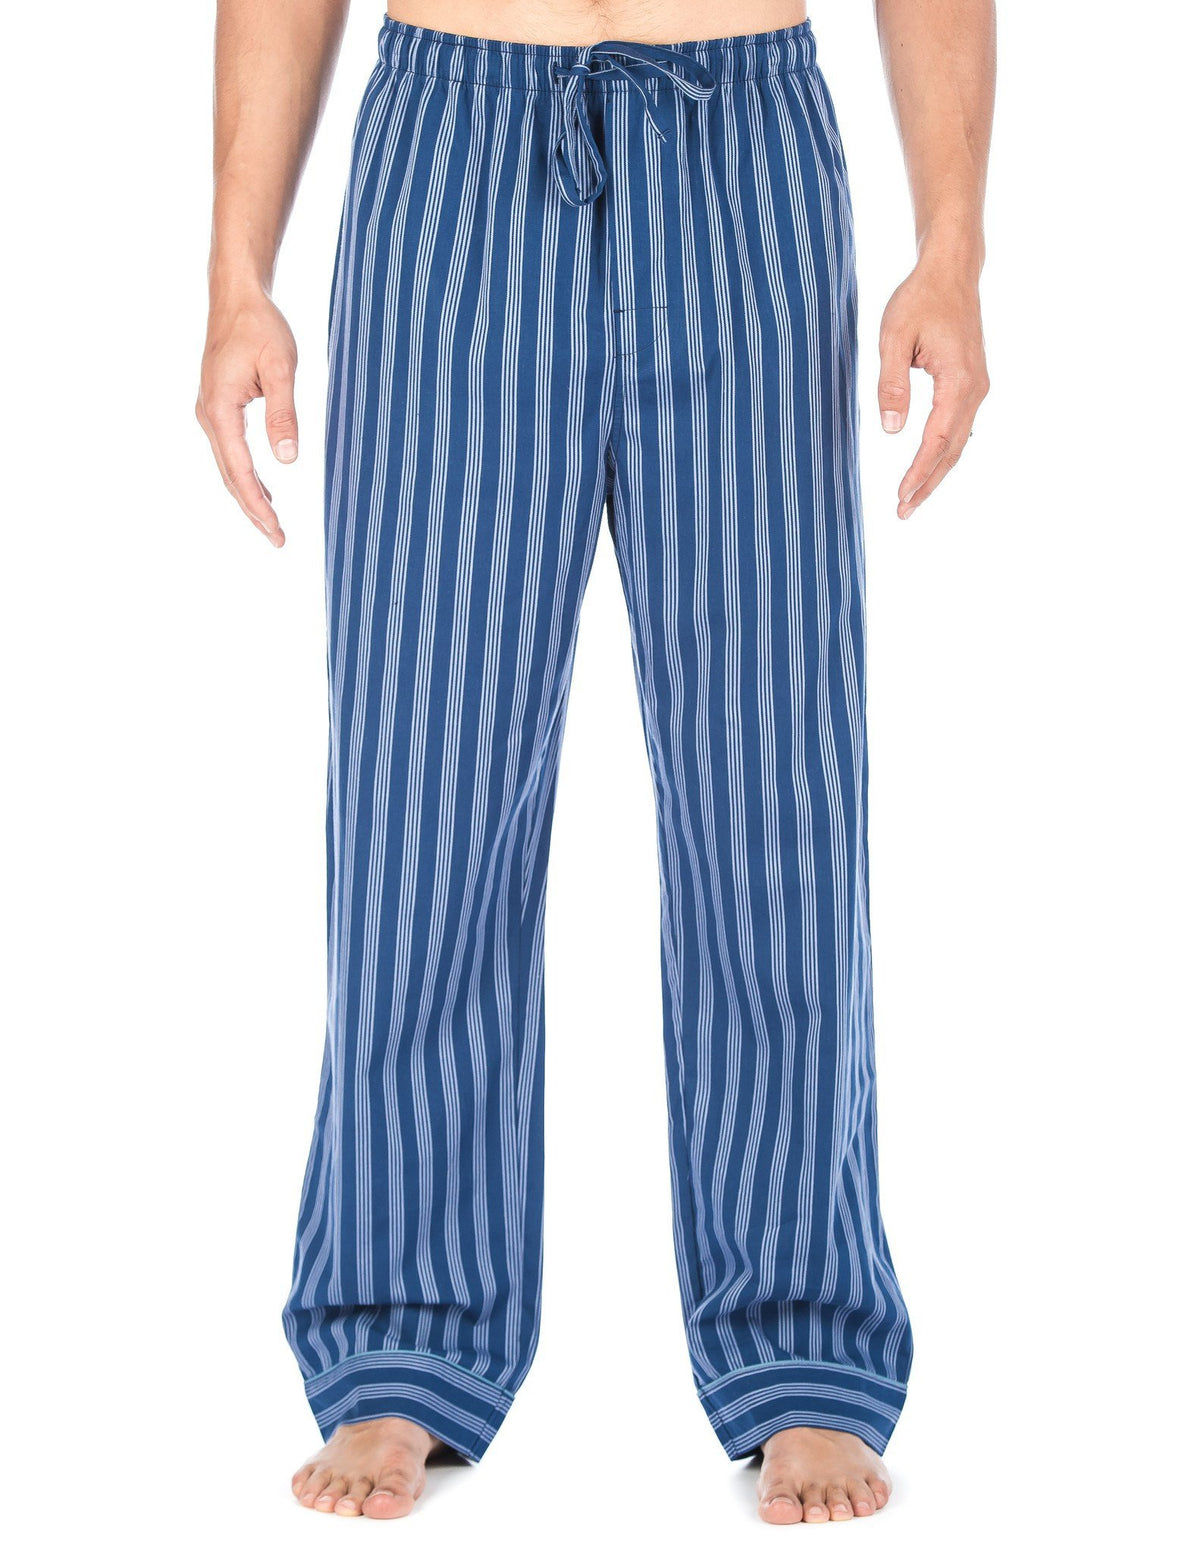 Men's 100% Cotton Comfort-Fit Sleep/Lounge Pants - Stripes Blue Tone